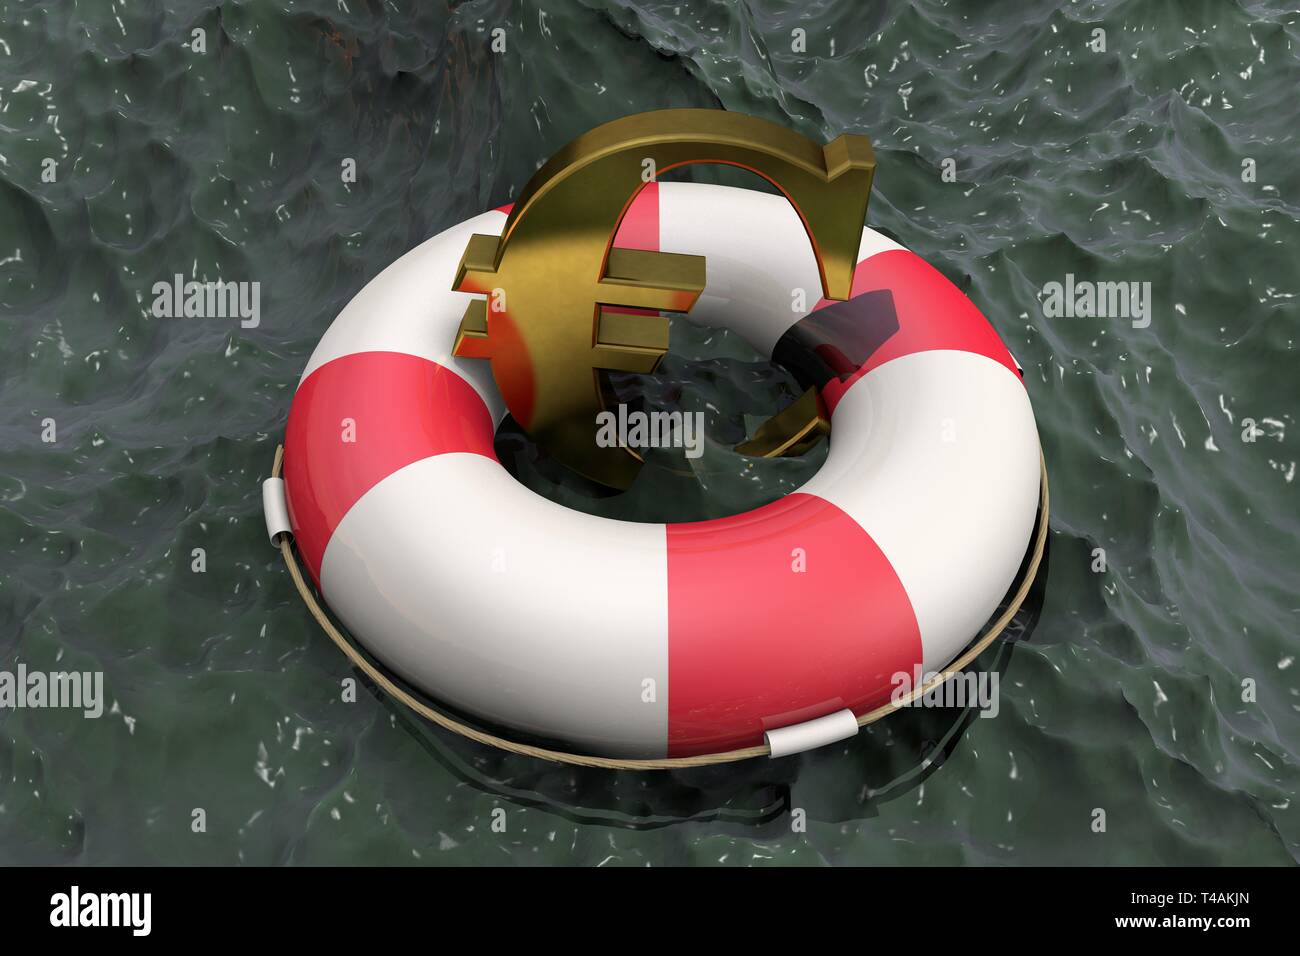 3d immagine: Golden simbolo dell'euro su un salvagente,sullo sfondo di acqua fangosa. Supporto per l' economia dell' Unione europea. Iniezione finanziaria Foto Stock